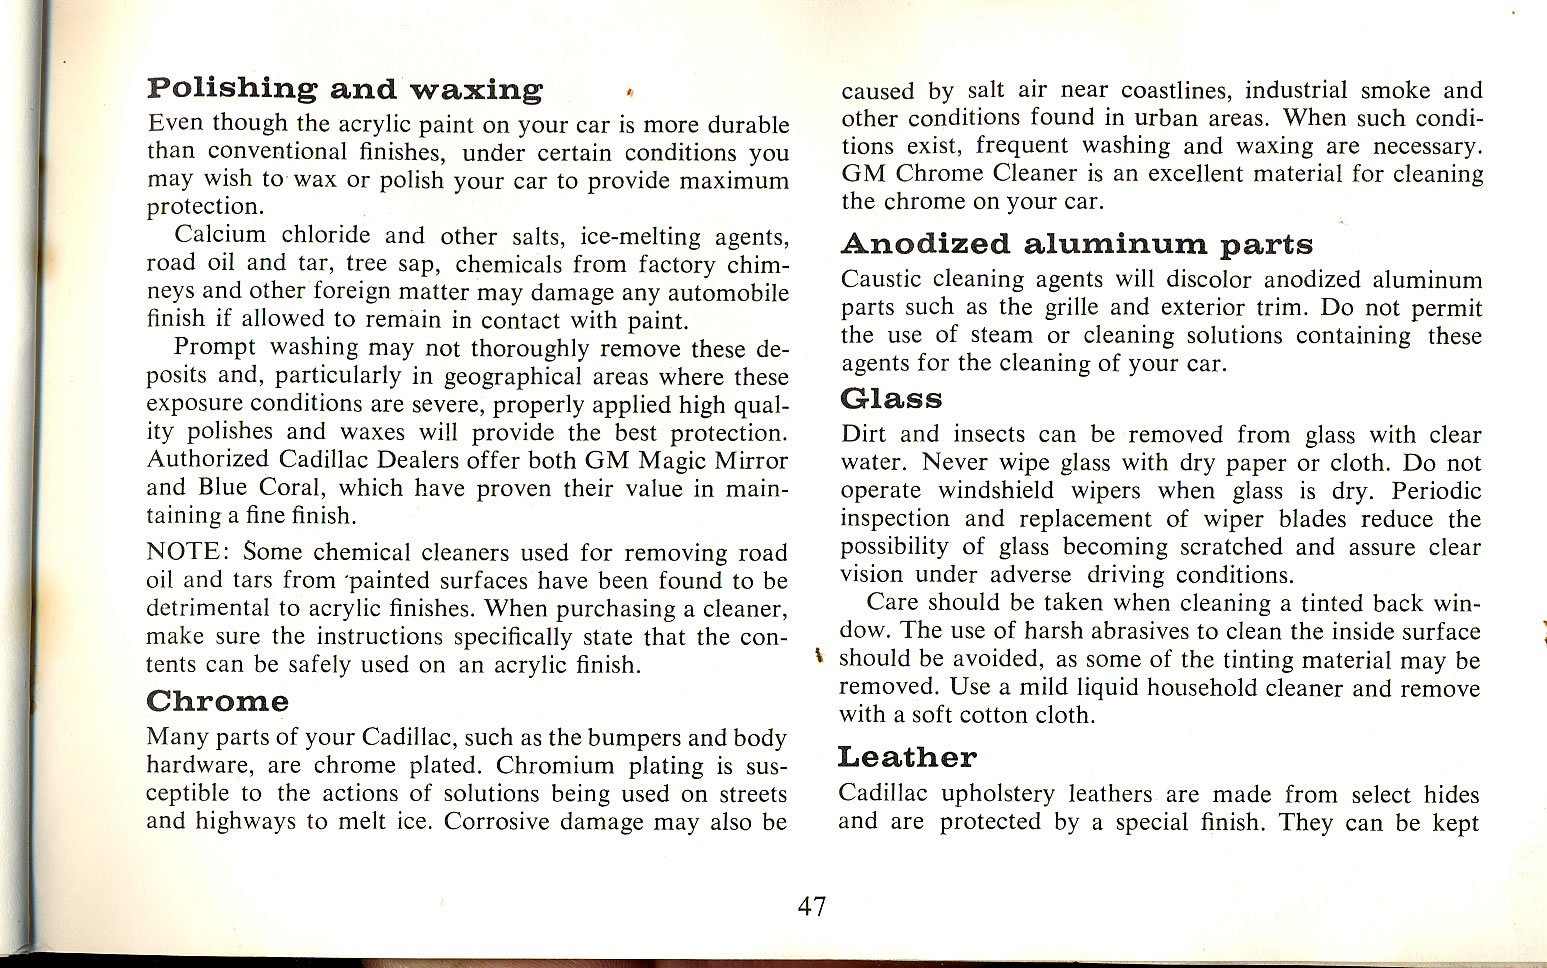 1965 Cadillac Manual-47